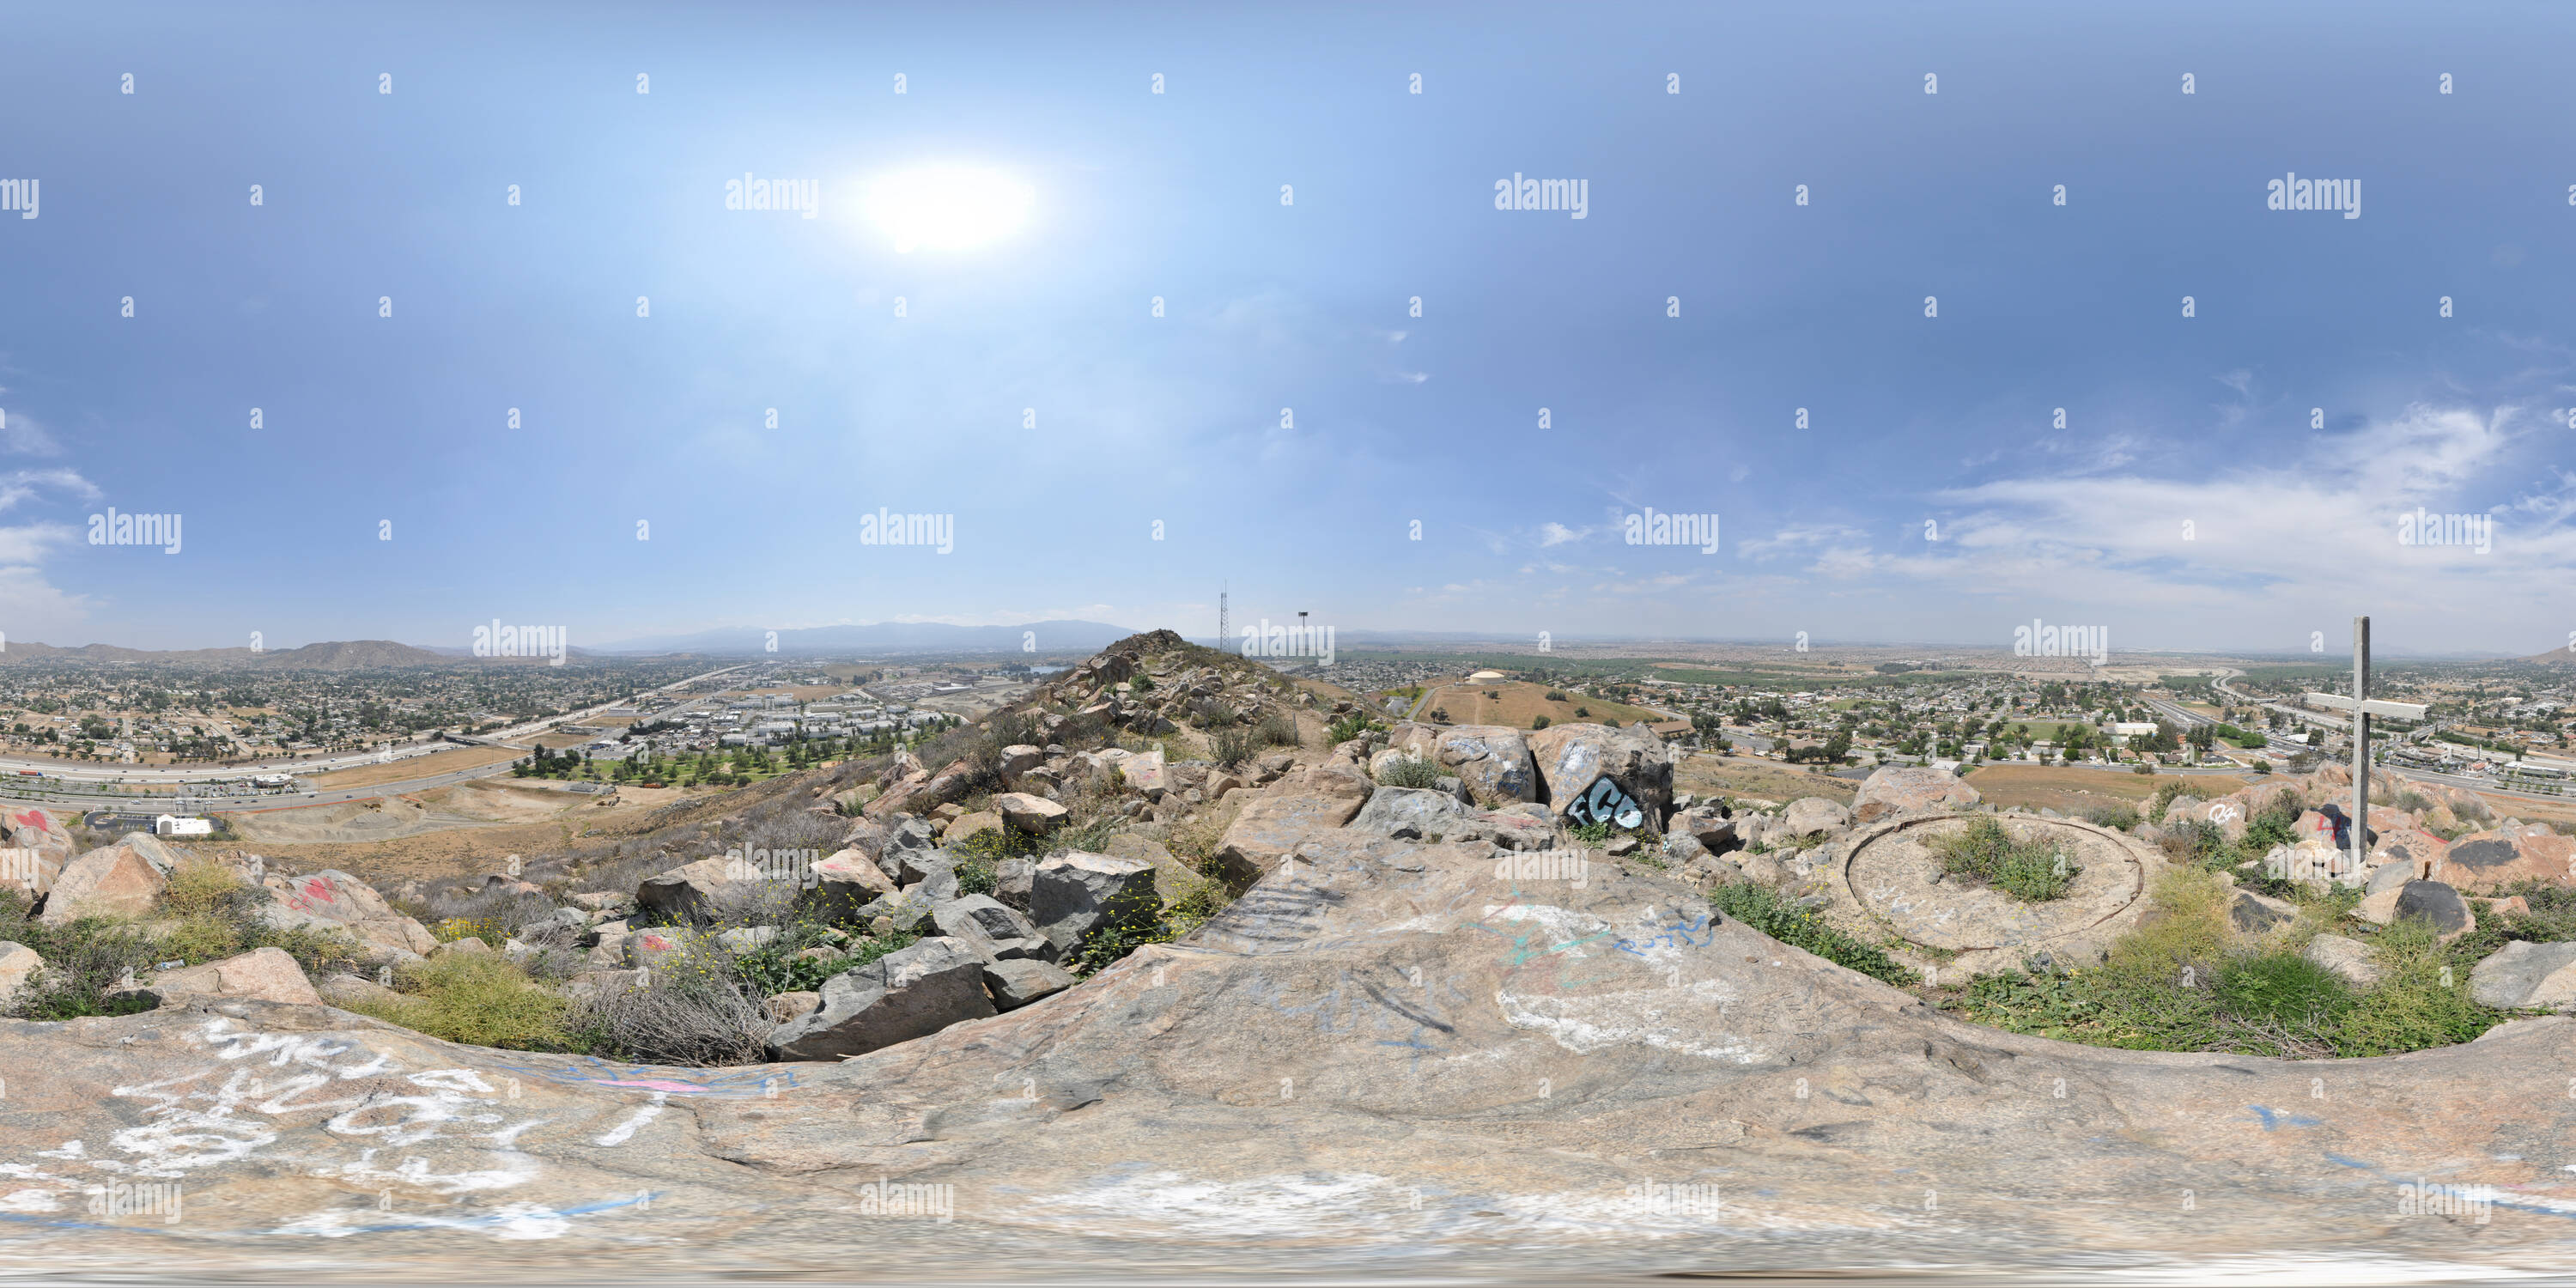 Visualizzazione panoramica a 360 gradi di Beacon Hill si affacciano di Eastvale, Norco, e corona in California - 2